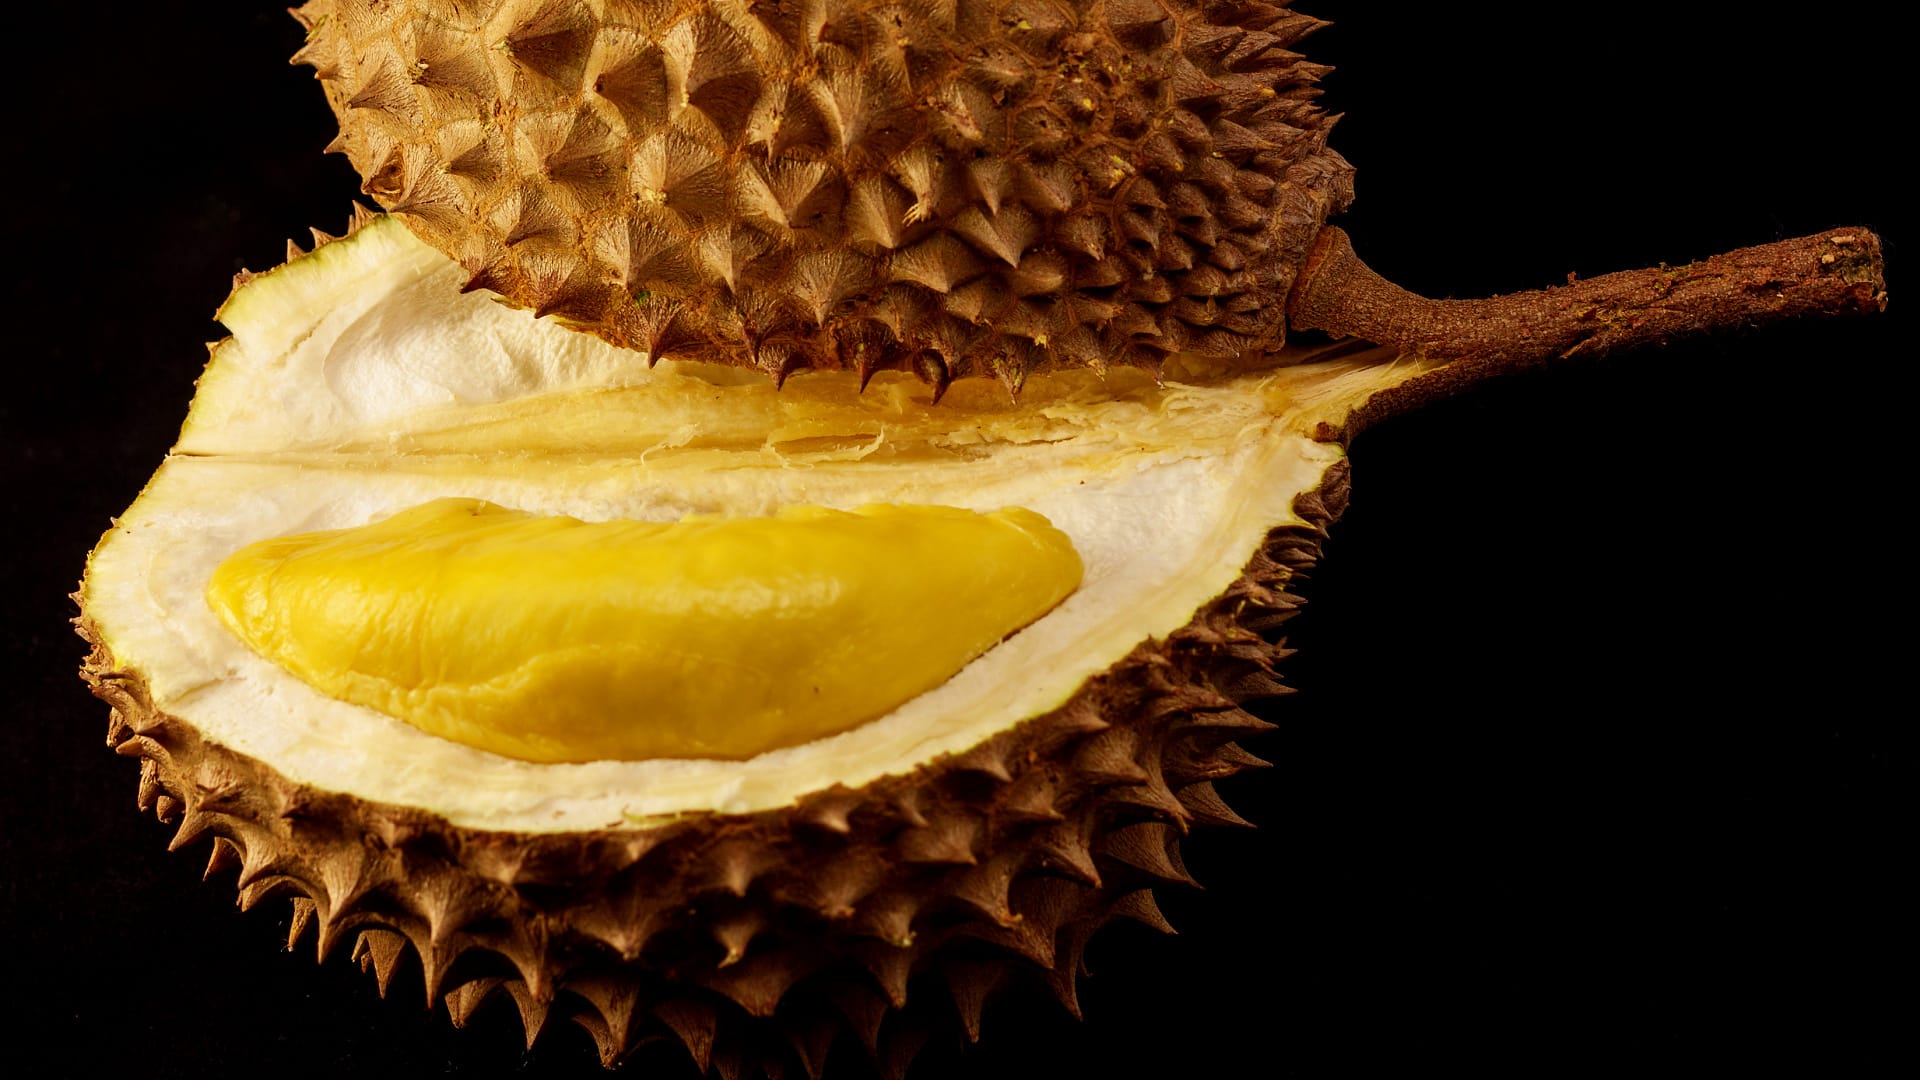 Takhle vypadá durian - nejsmradlavější ovoce světa